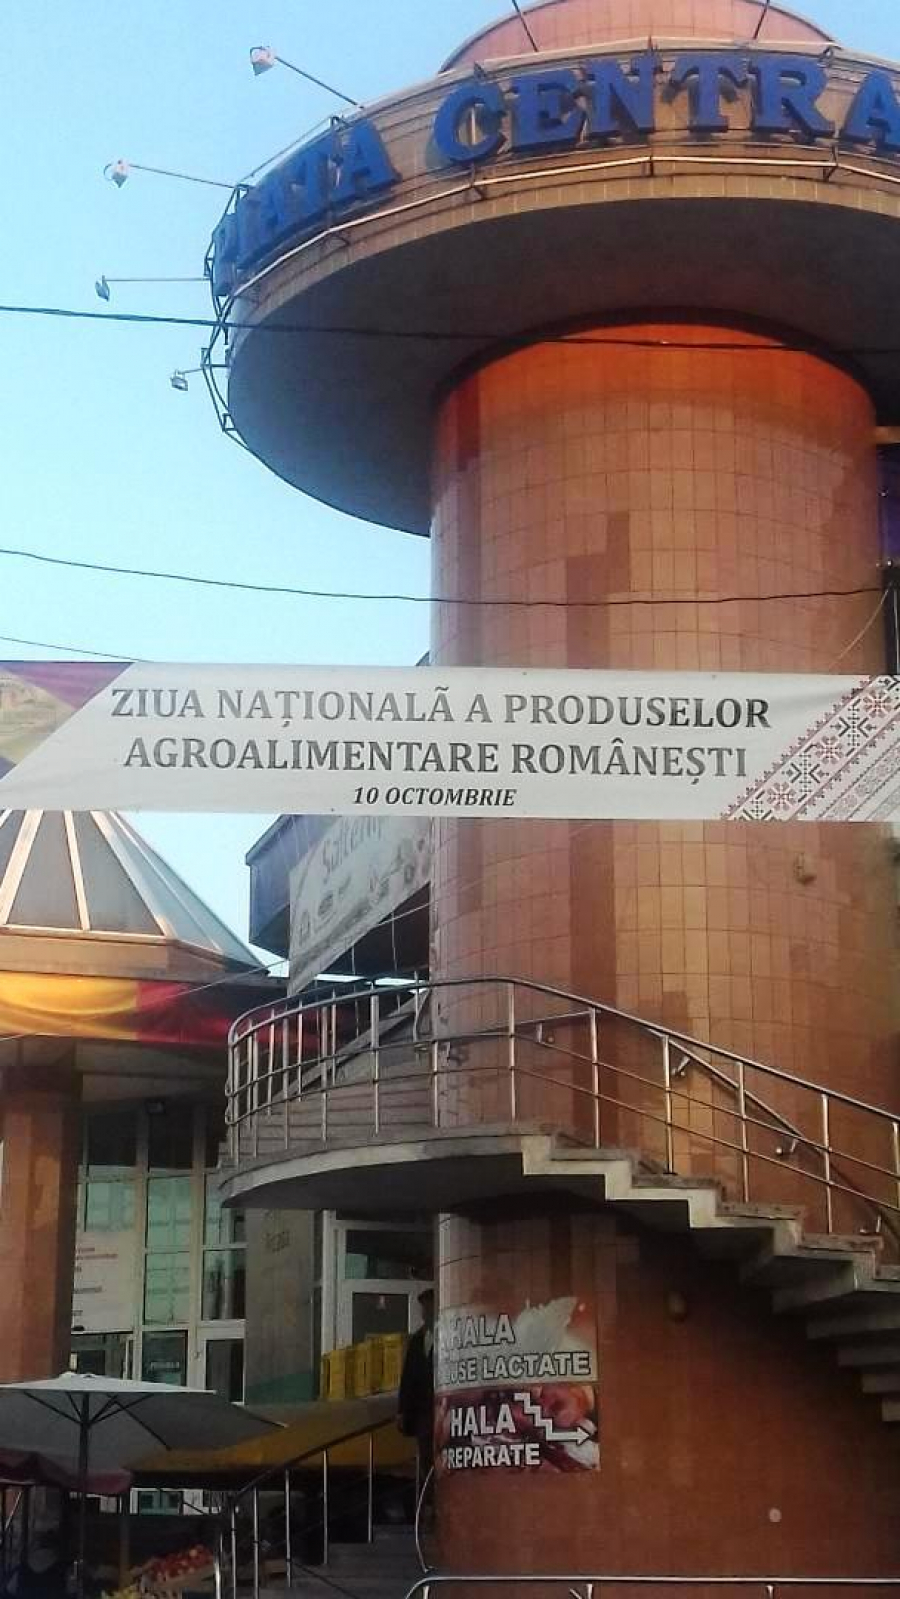 Ziua Naţională a Produselor Agroalimentare Româneşti